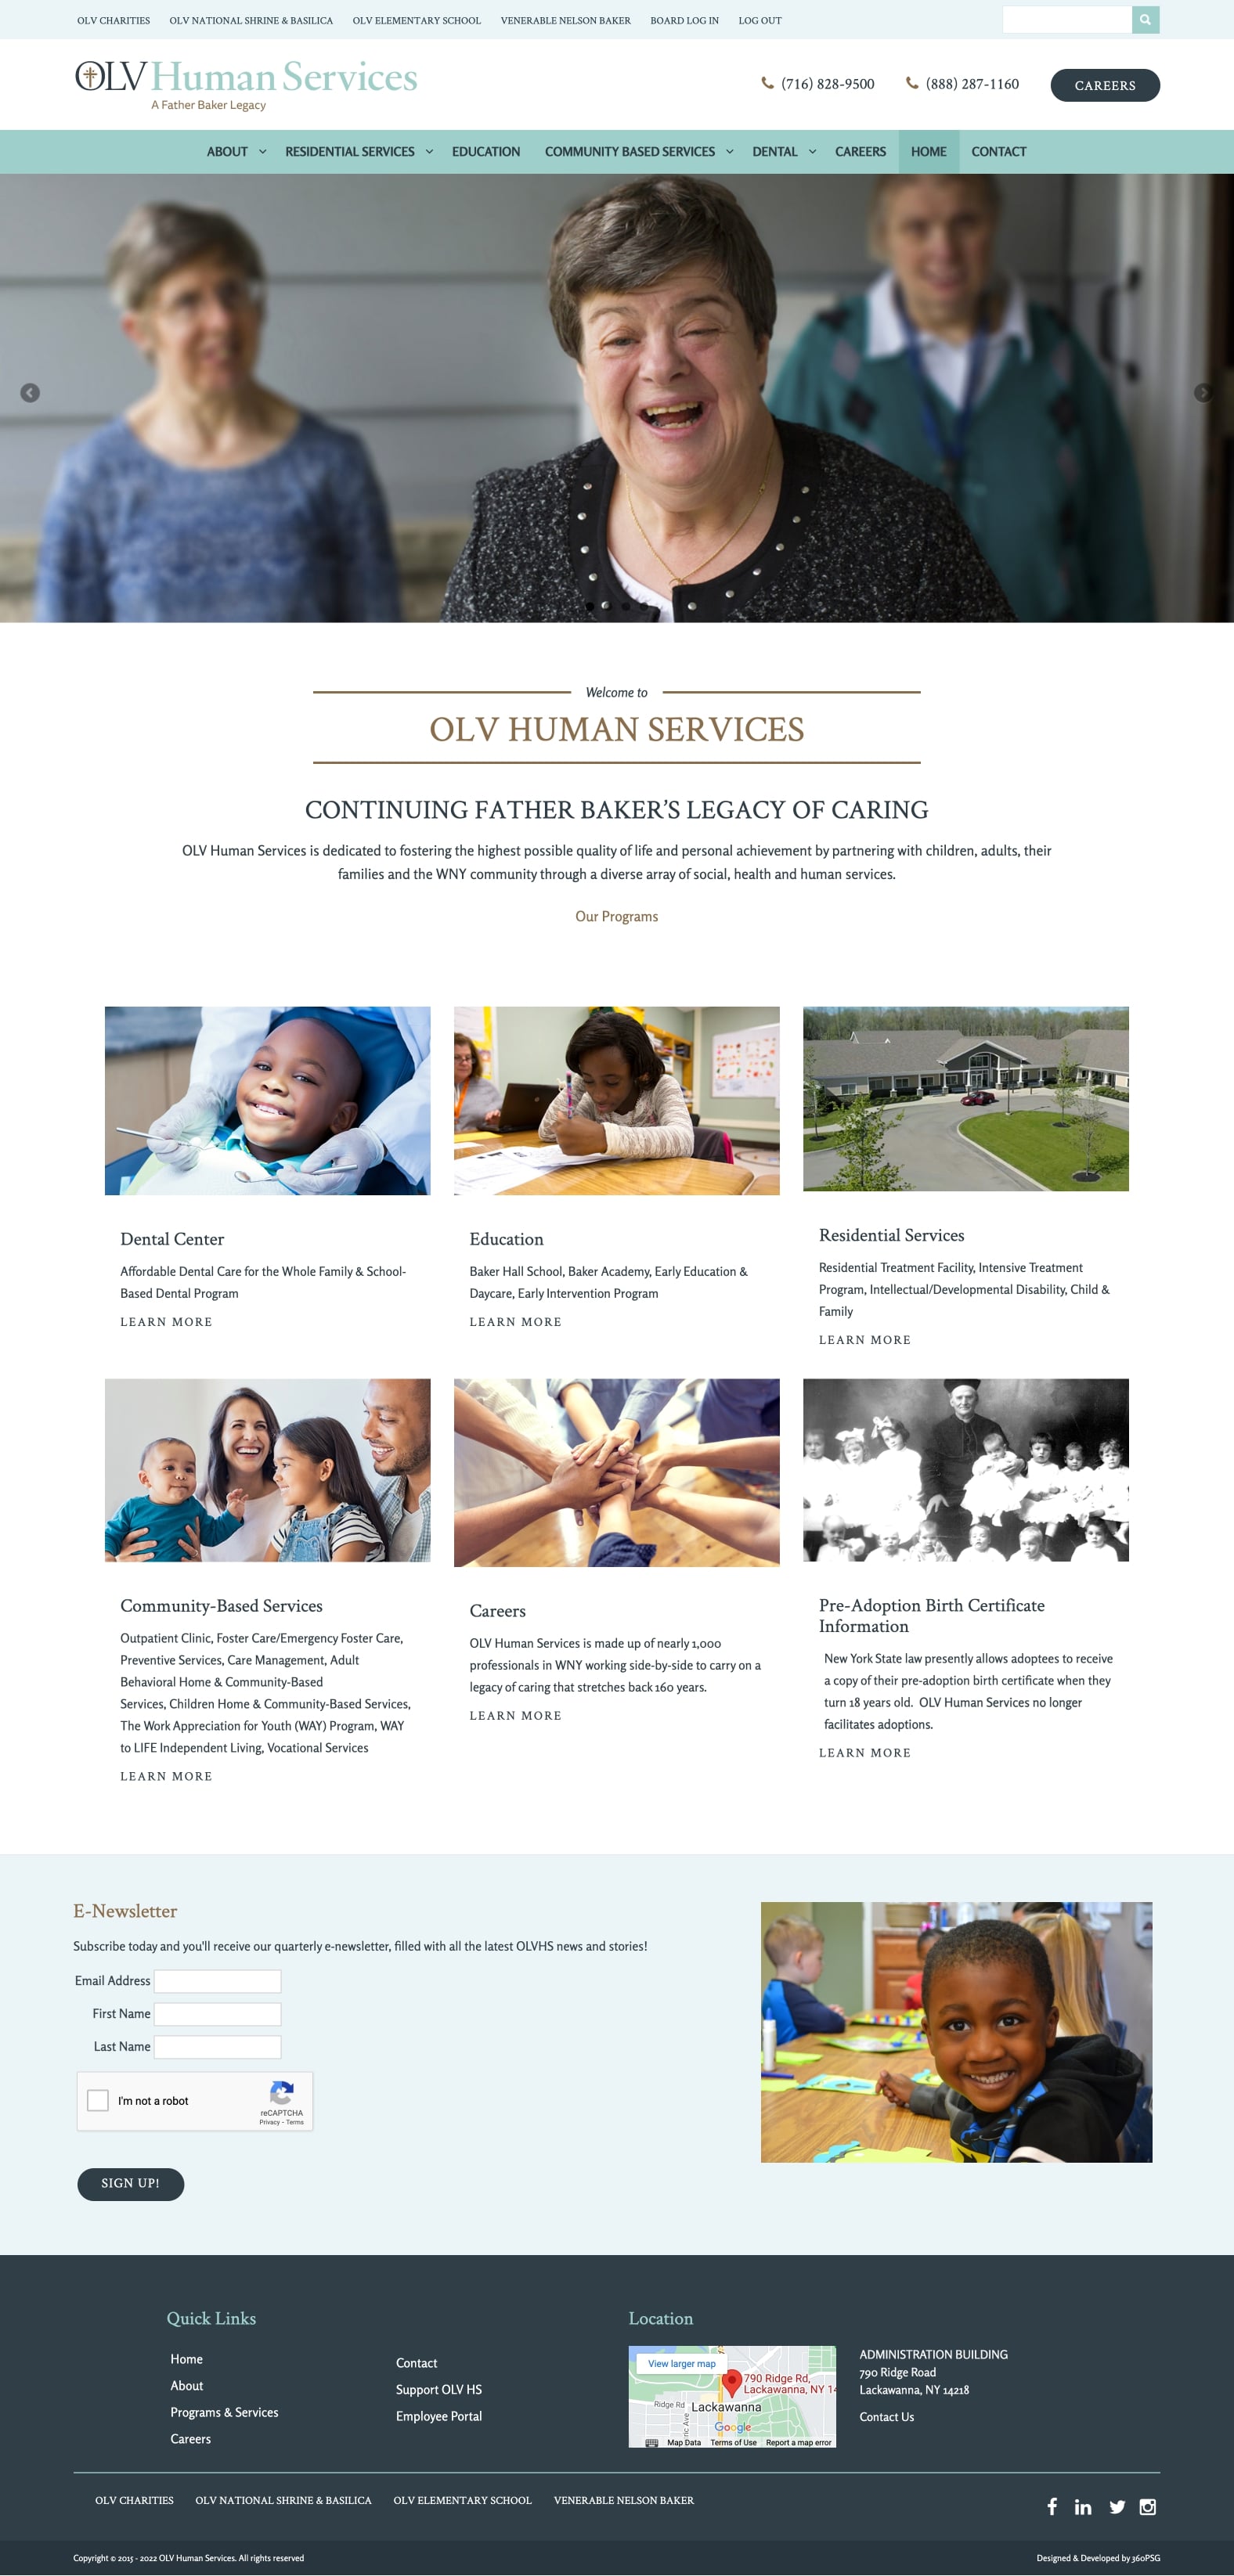 OLV Human Services Website - Desktop